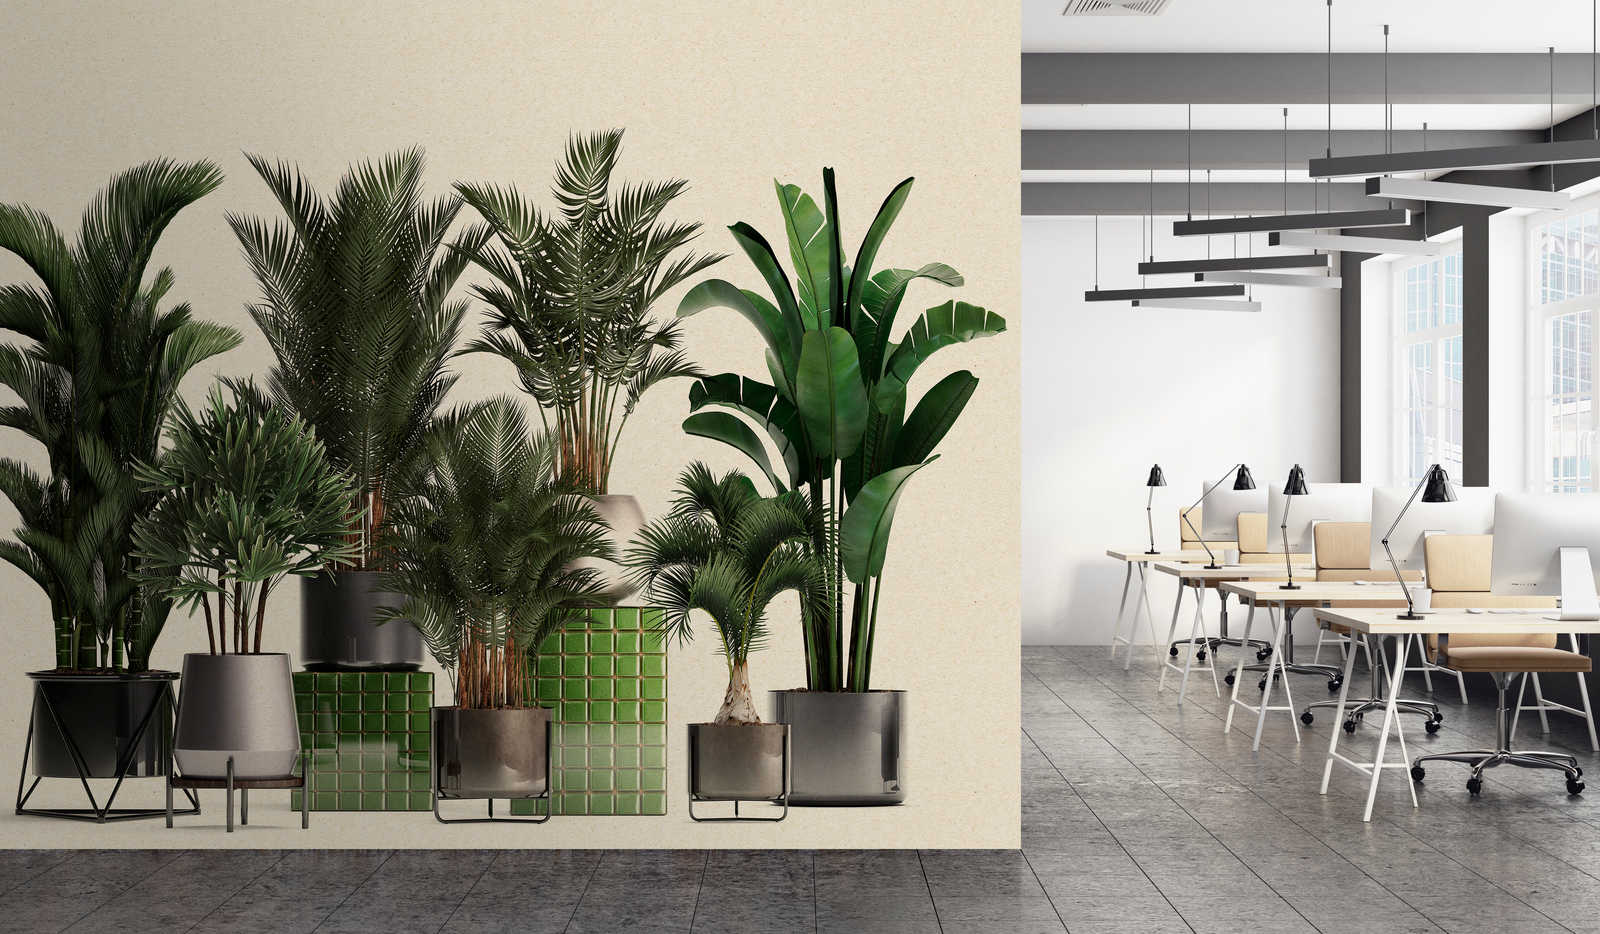             Tienda de plantas 1 - papel pintado fotográfico de la naturaleza plantas en maceta palmeras
        